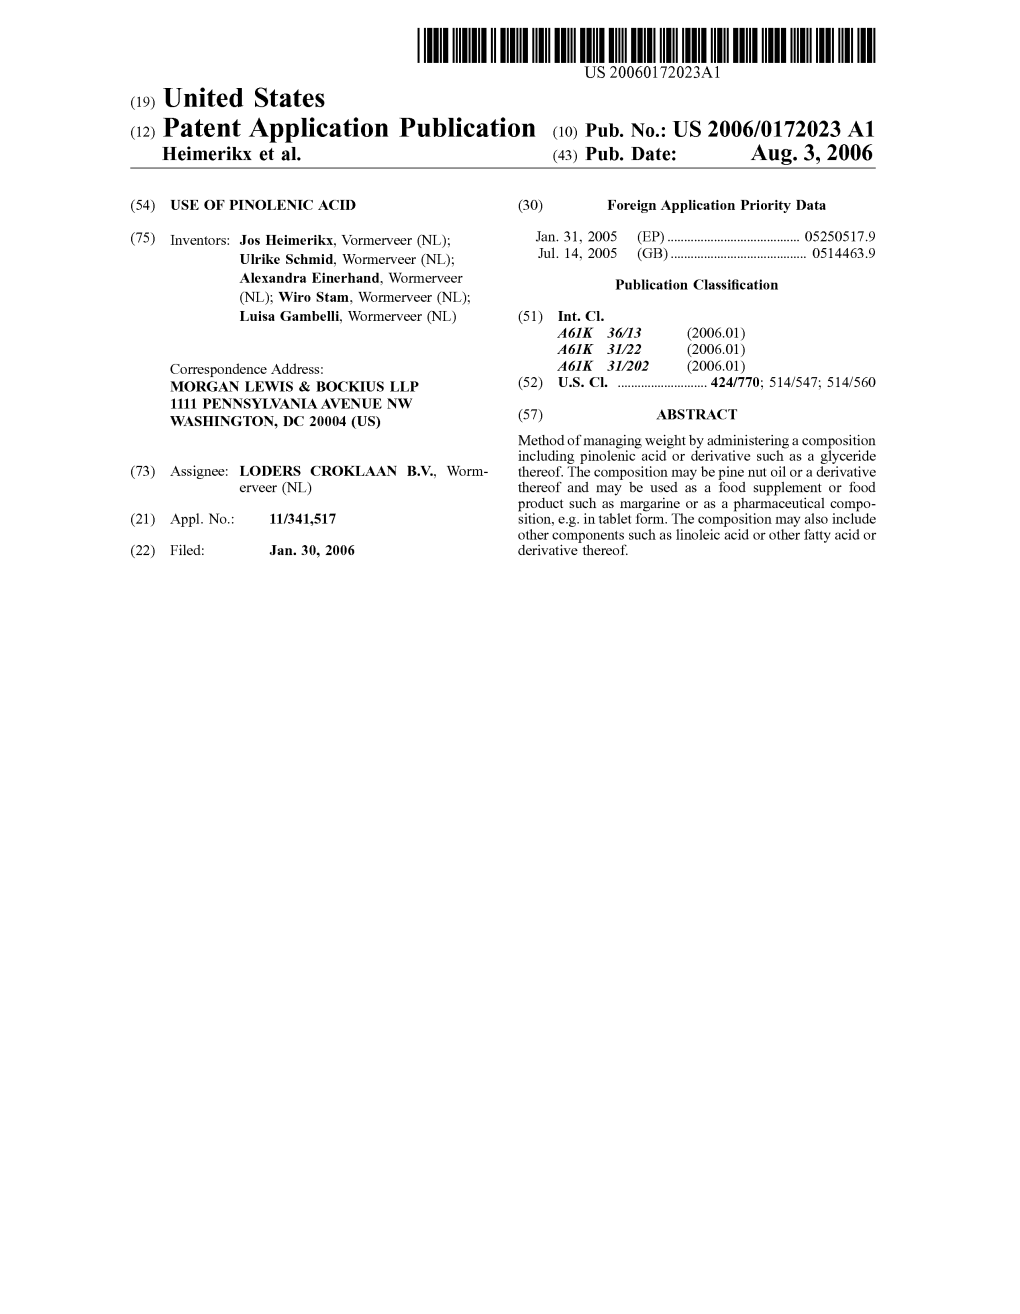 (12) Patent Application Publication (10) Pub. No.: US 2006/0172023 A1 Heimerikx Et Al